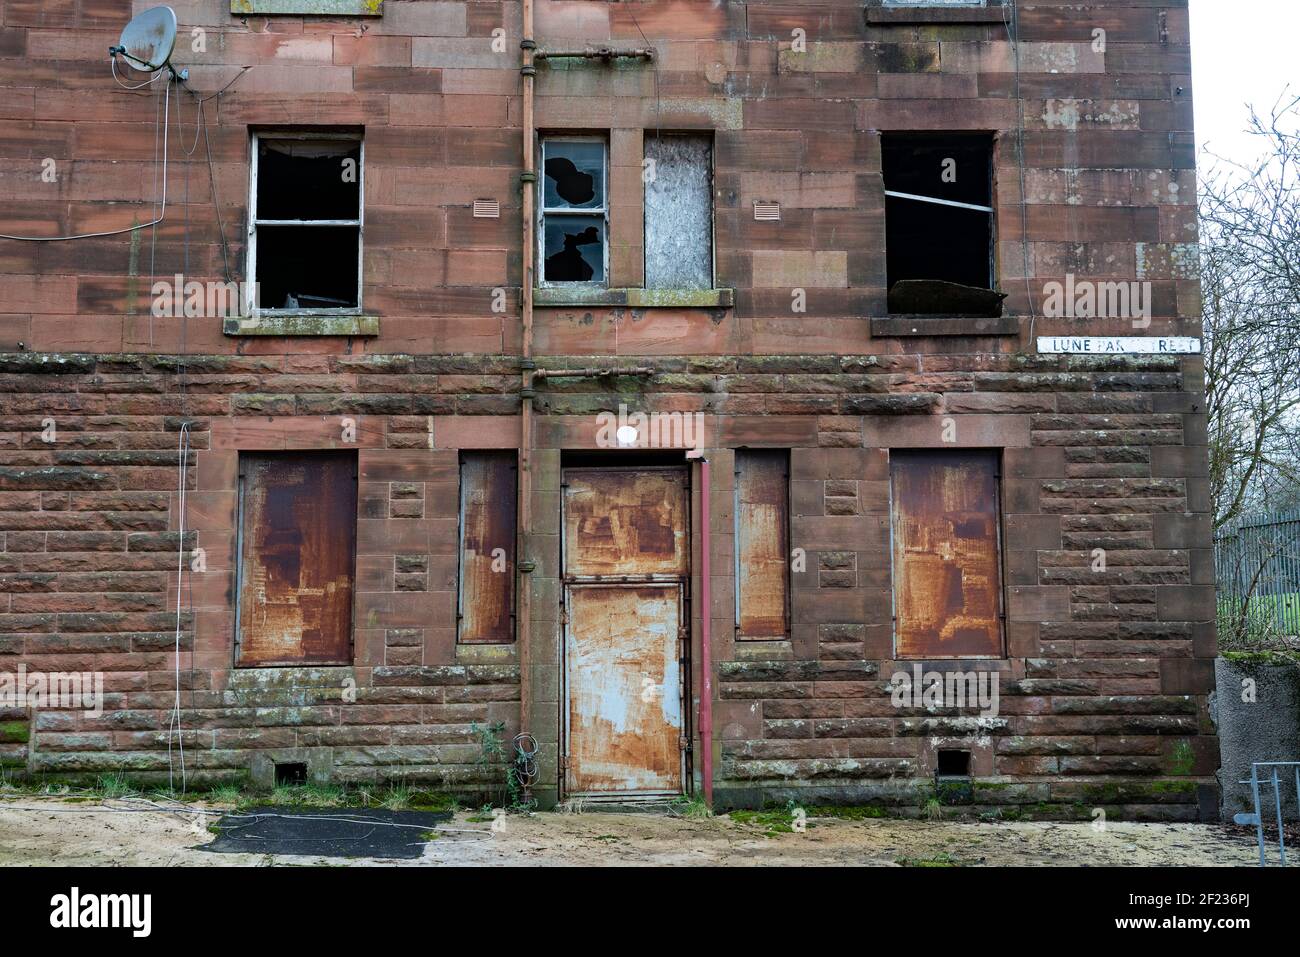 Blick auf verödlte Wohnhäuser im Clune Park in Port Glasgow, Inverclyde. Mietshäuser sollen abgerissen und saniert werden. Schottland, Großbritannien Stockfoto